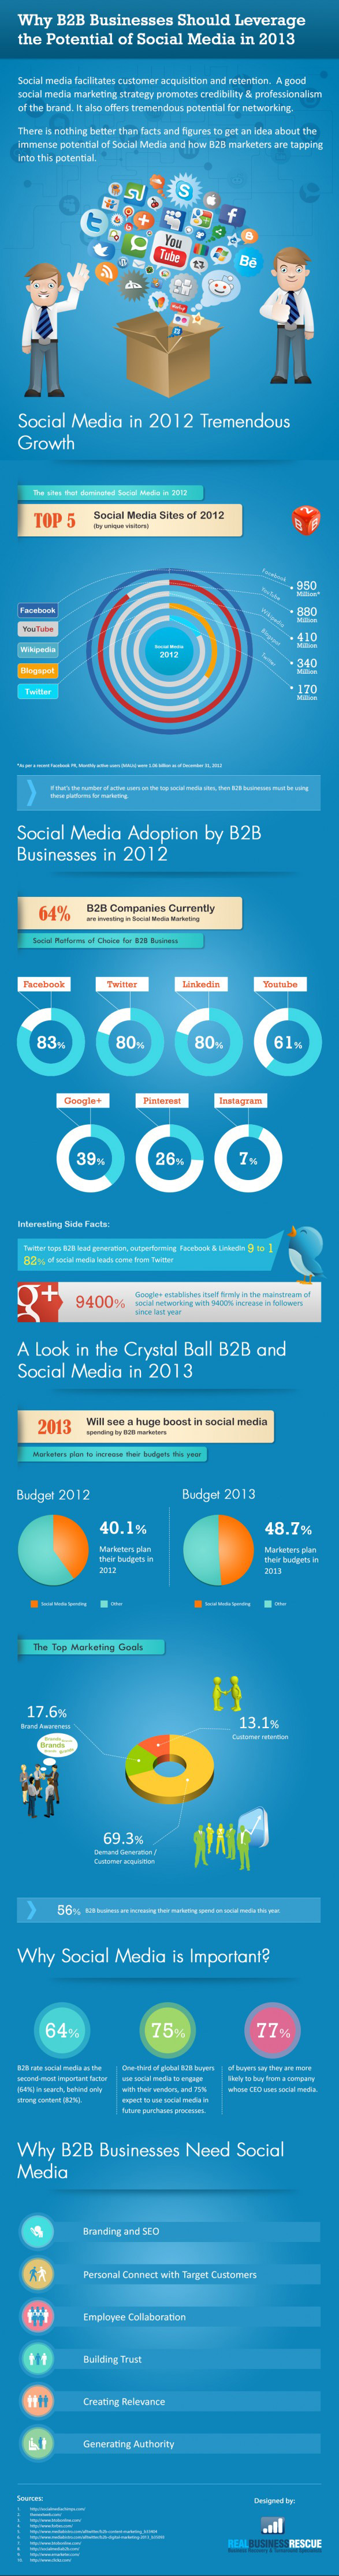 b2b-social-media